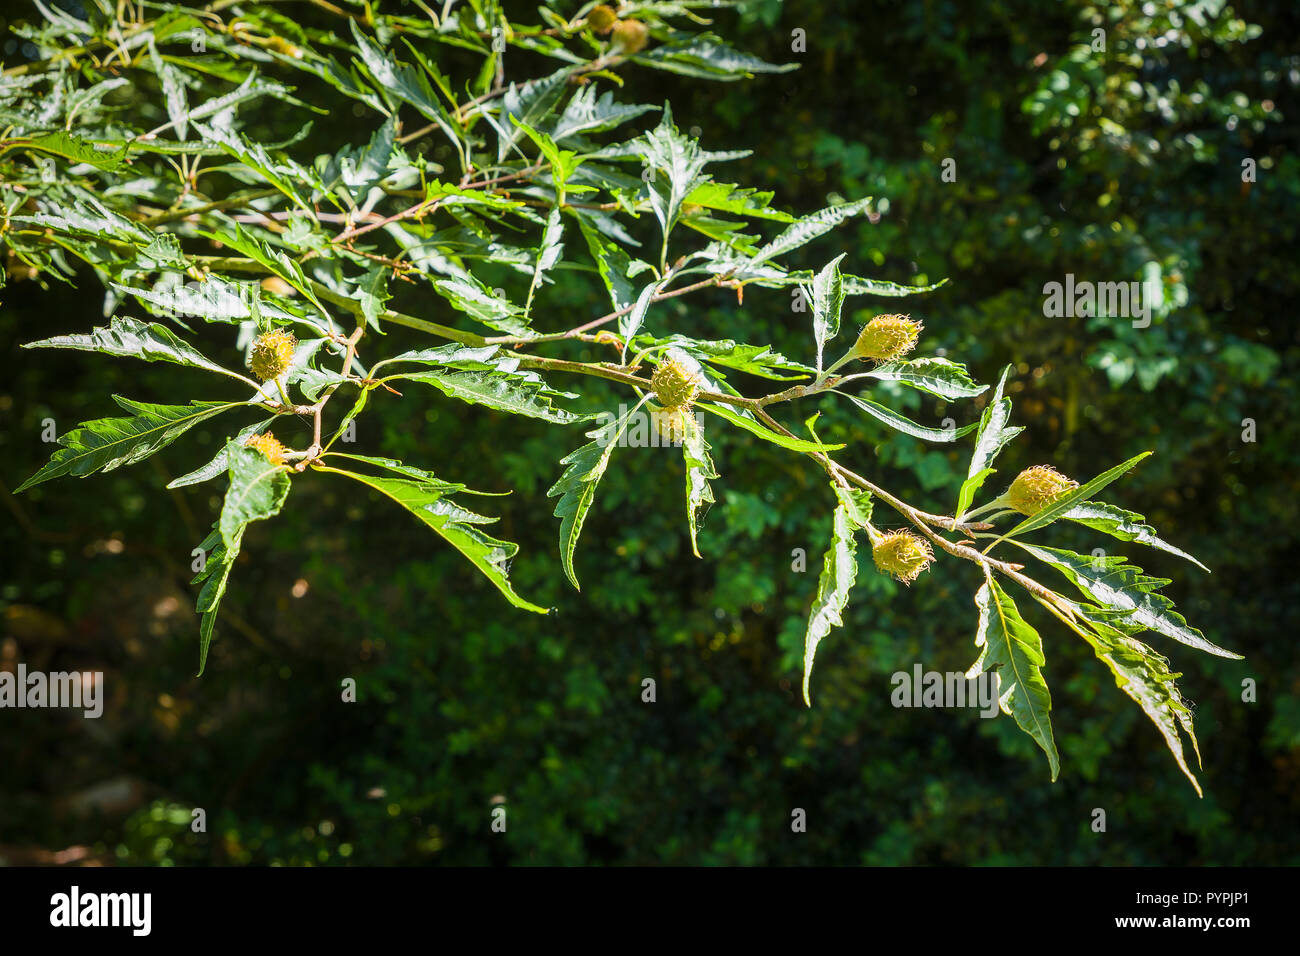 Fagus sylvatica Asplenifolia montrant fruits embryonnaires au début de l'été dans un jardin anglais Banque D'Images